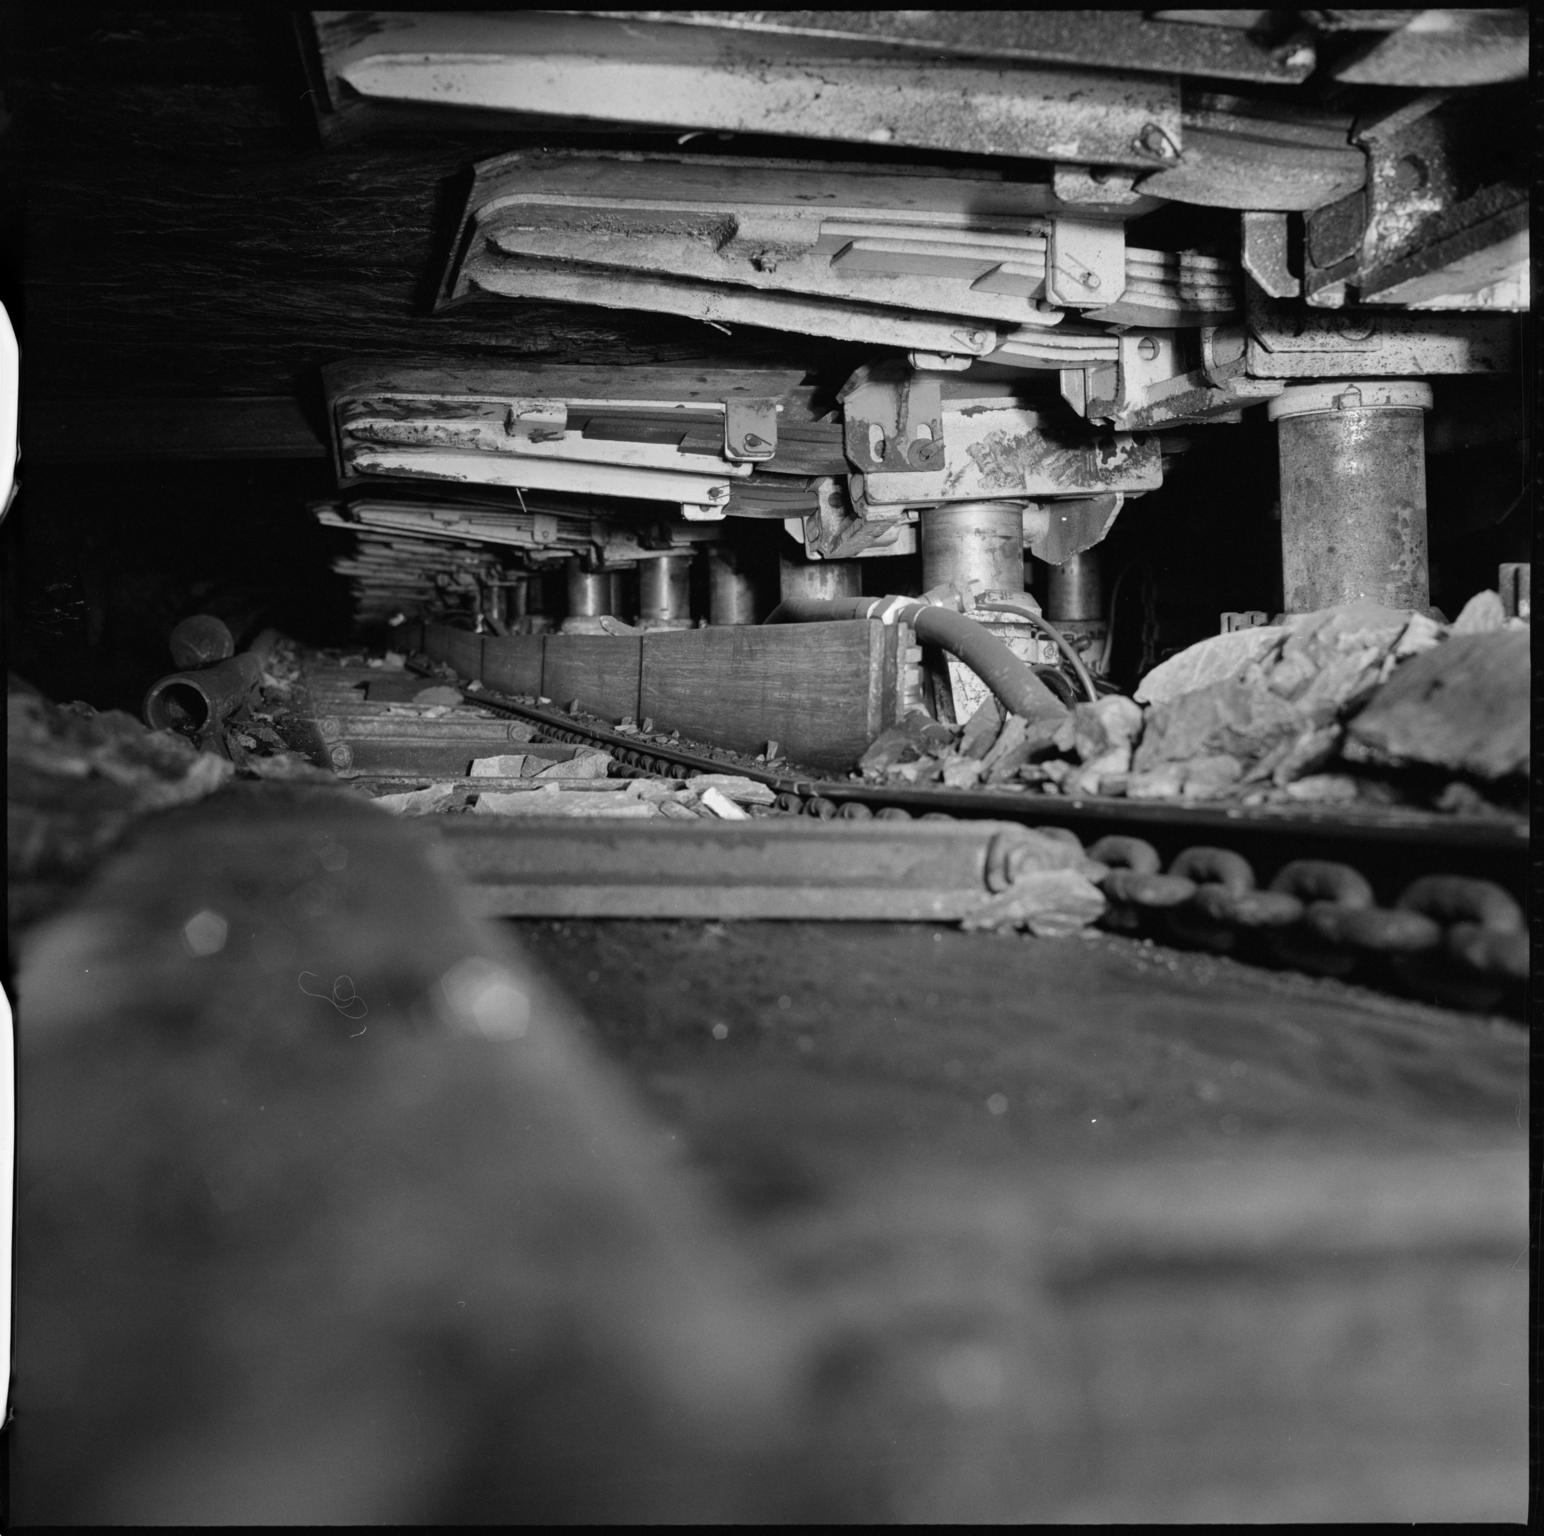 Blaenserchan Colliery, film negative